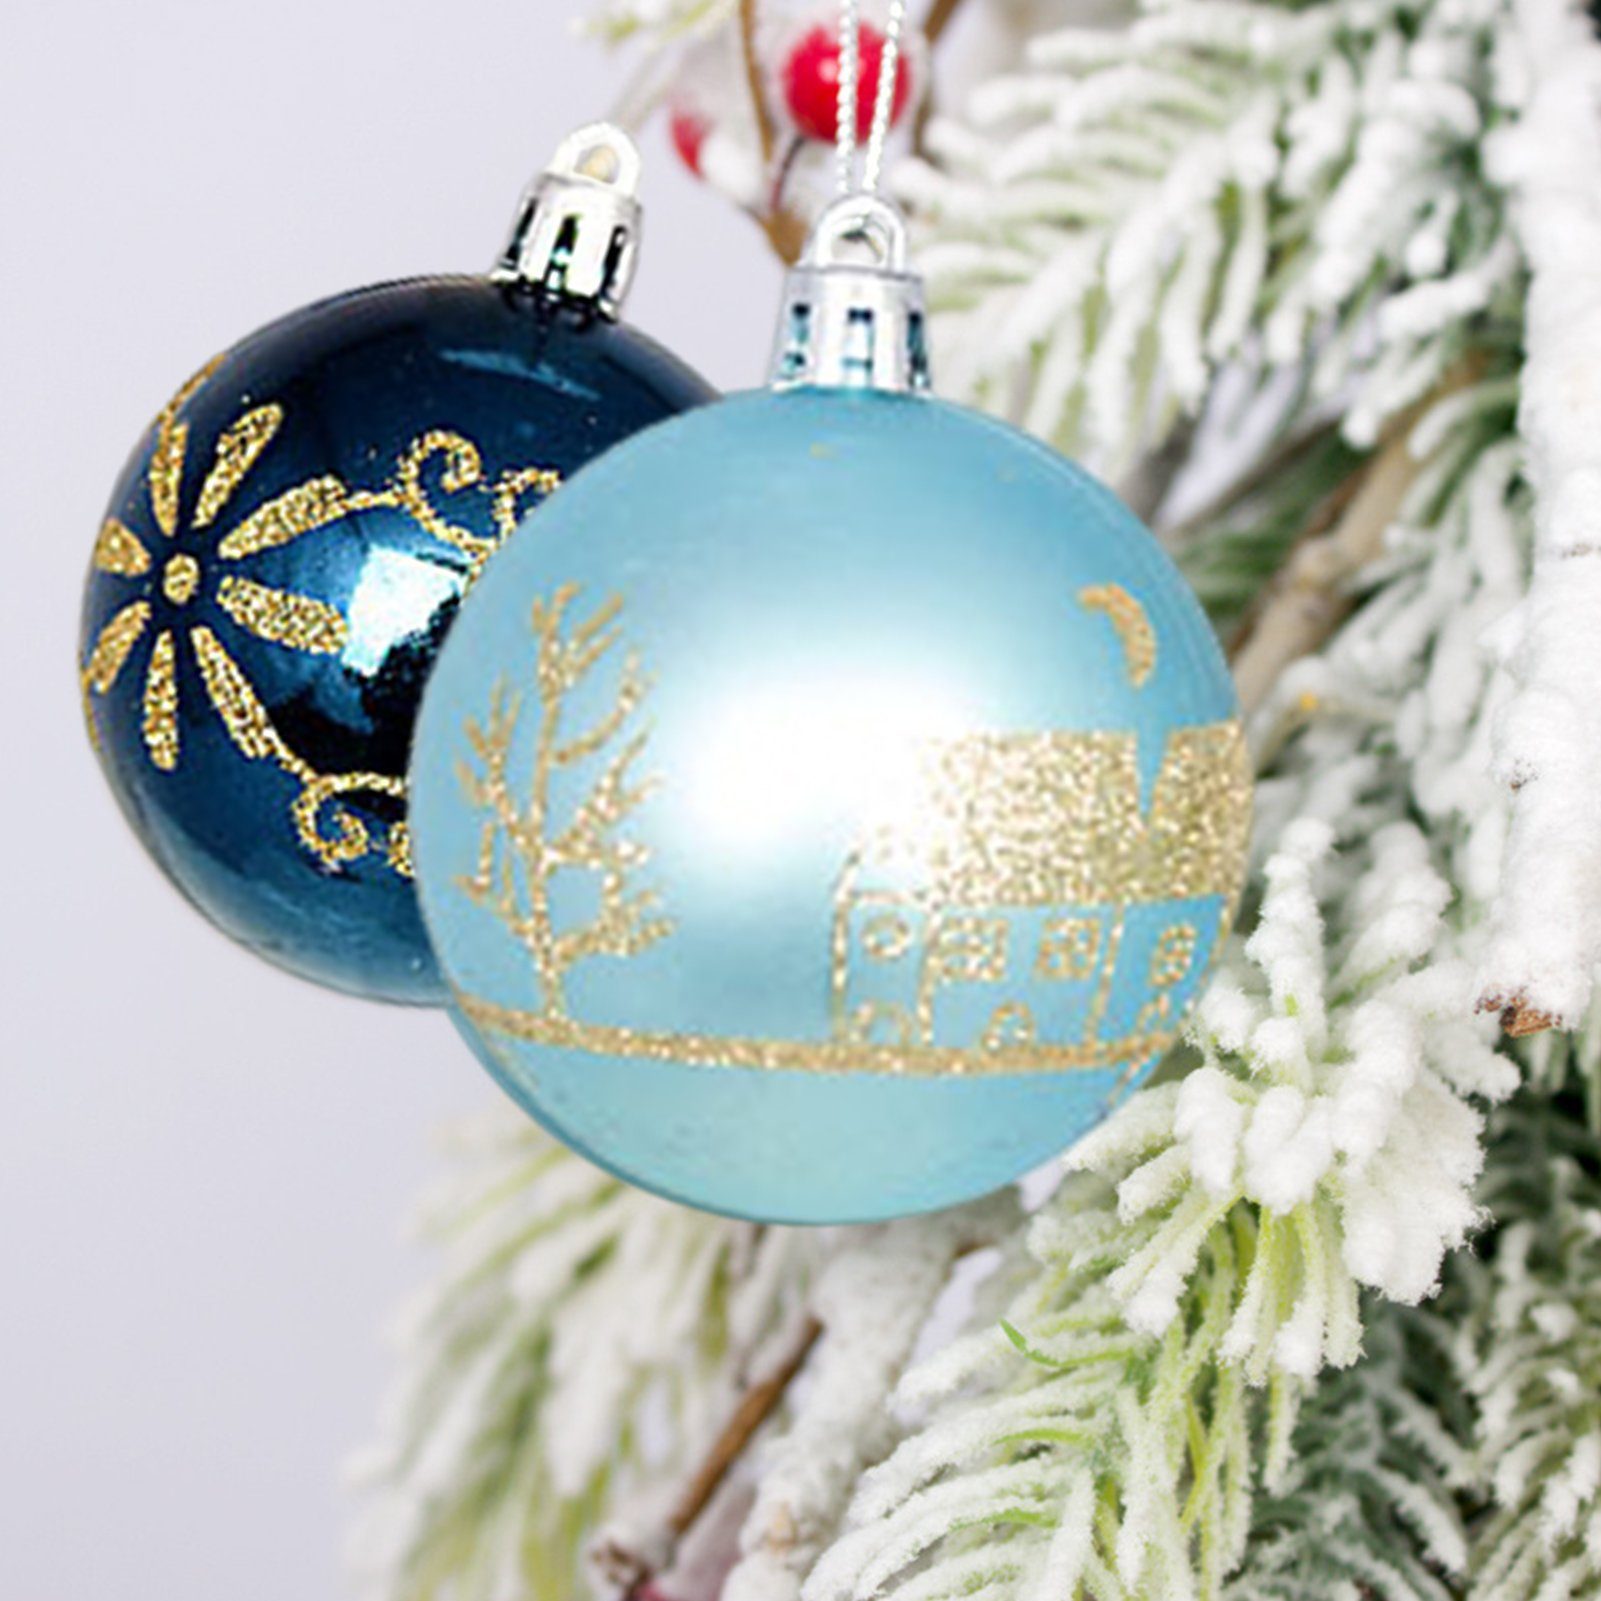 44 aus Rutaqian Weihnachtsbaumkugel Rot-Weiß-Weihnachtsball-Ornament, Plastik Weihnachtskugel 3-6cm Farbkugel Geschenkbox Stück/Set Set Weihnachtskugeln,